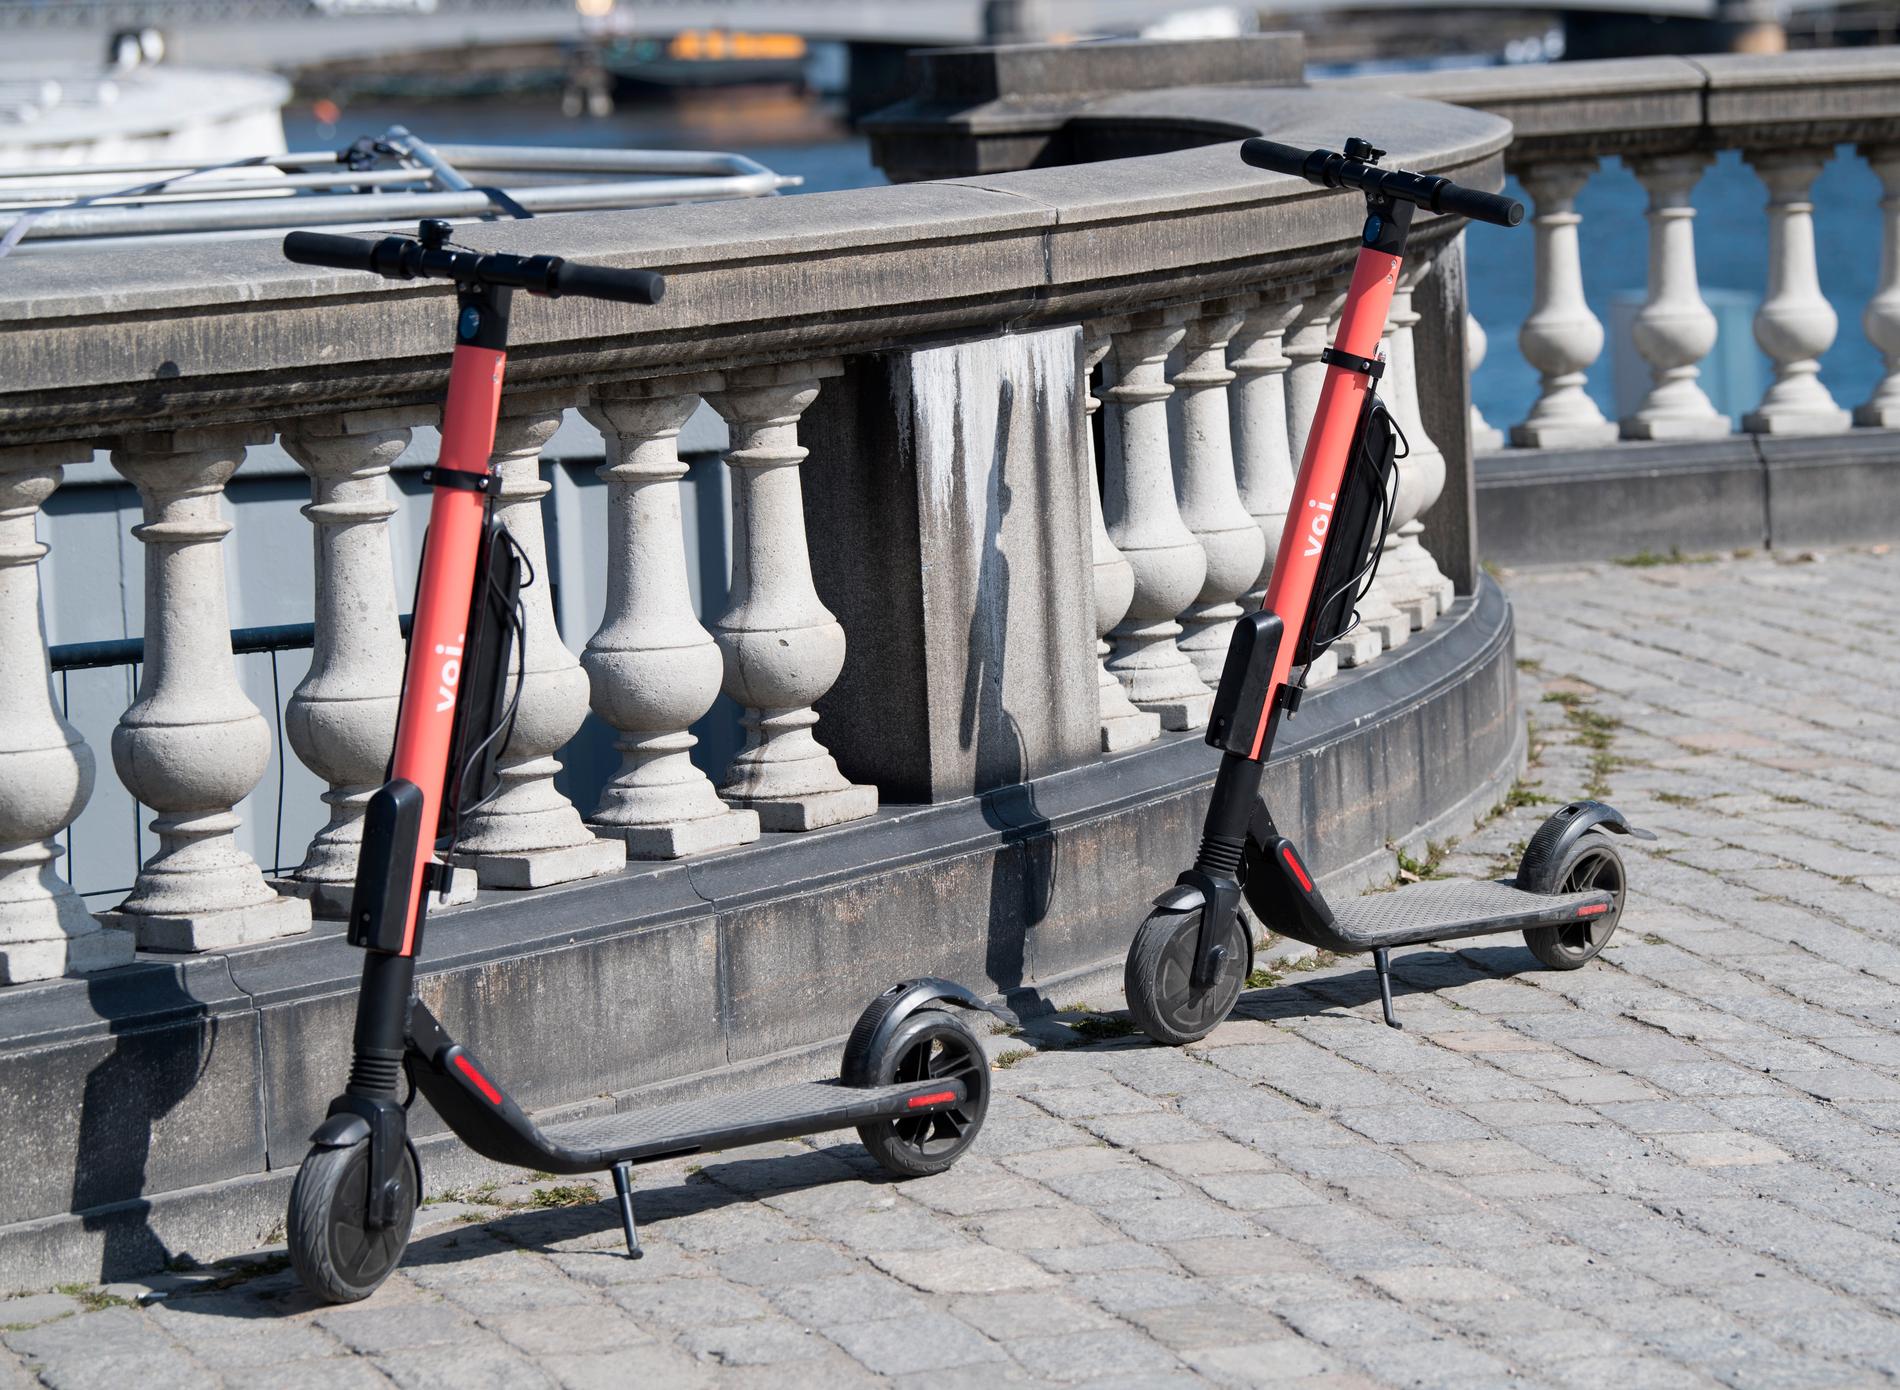 Elsparkcyklar har blivit allt vanligare i gatubilden – och i Helsingborgs hamnbassäng. Arkivbild.